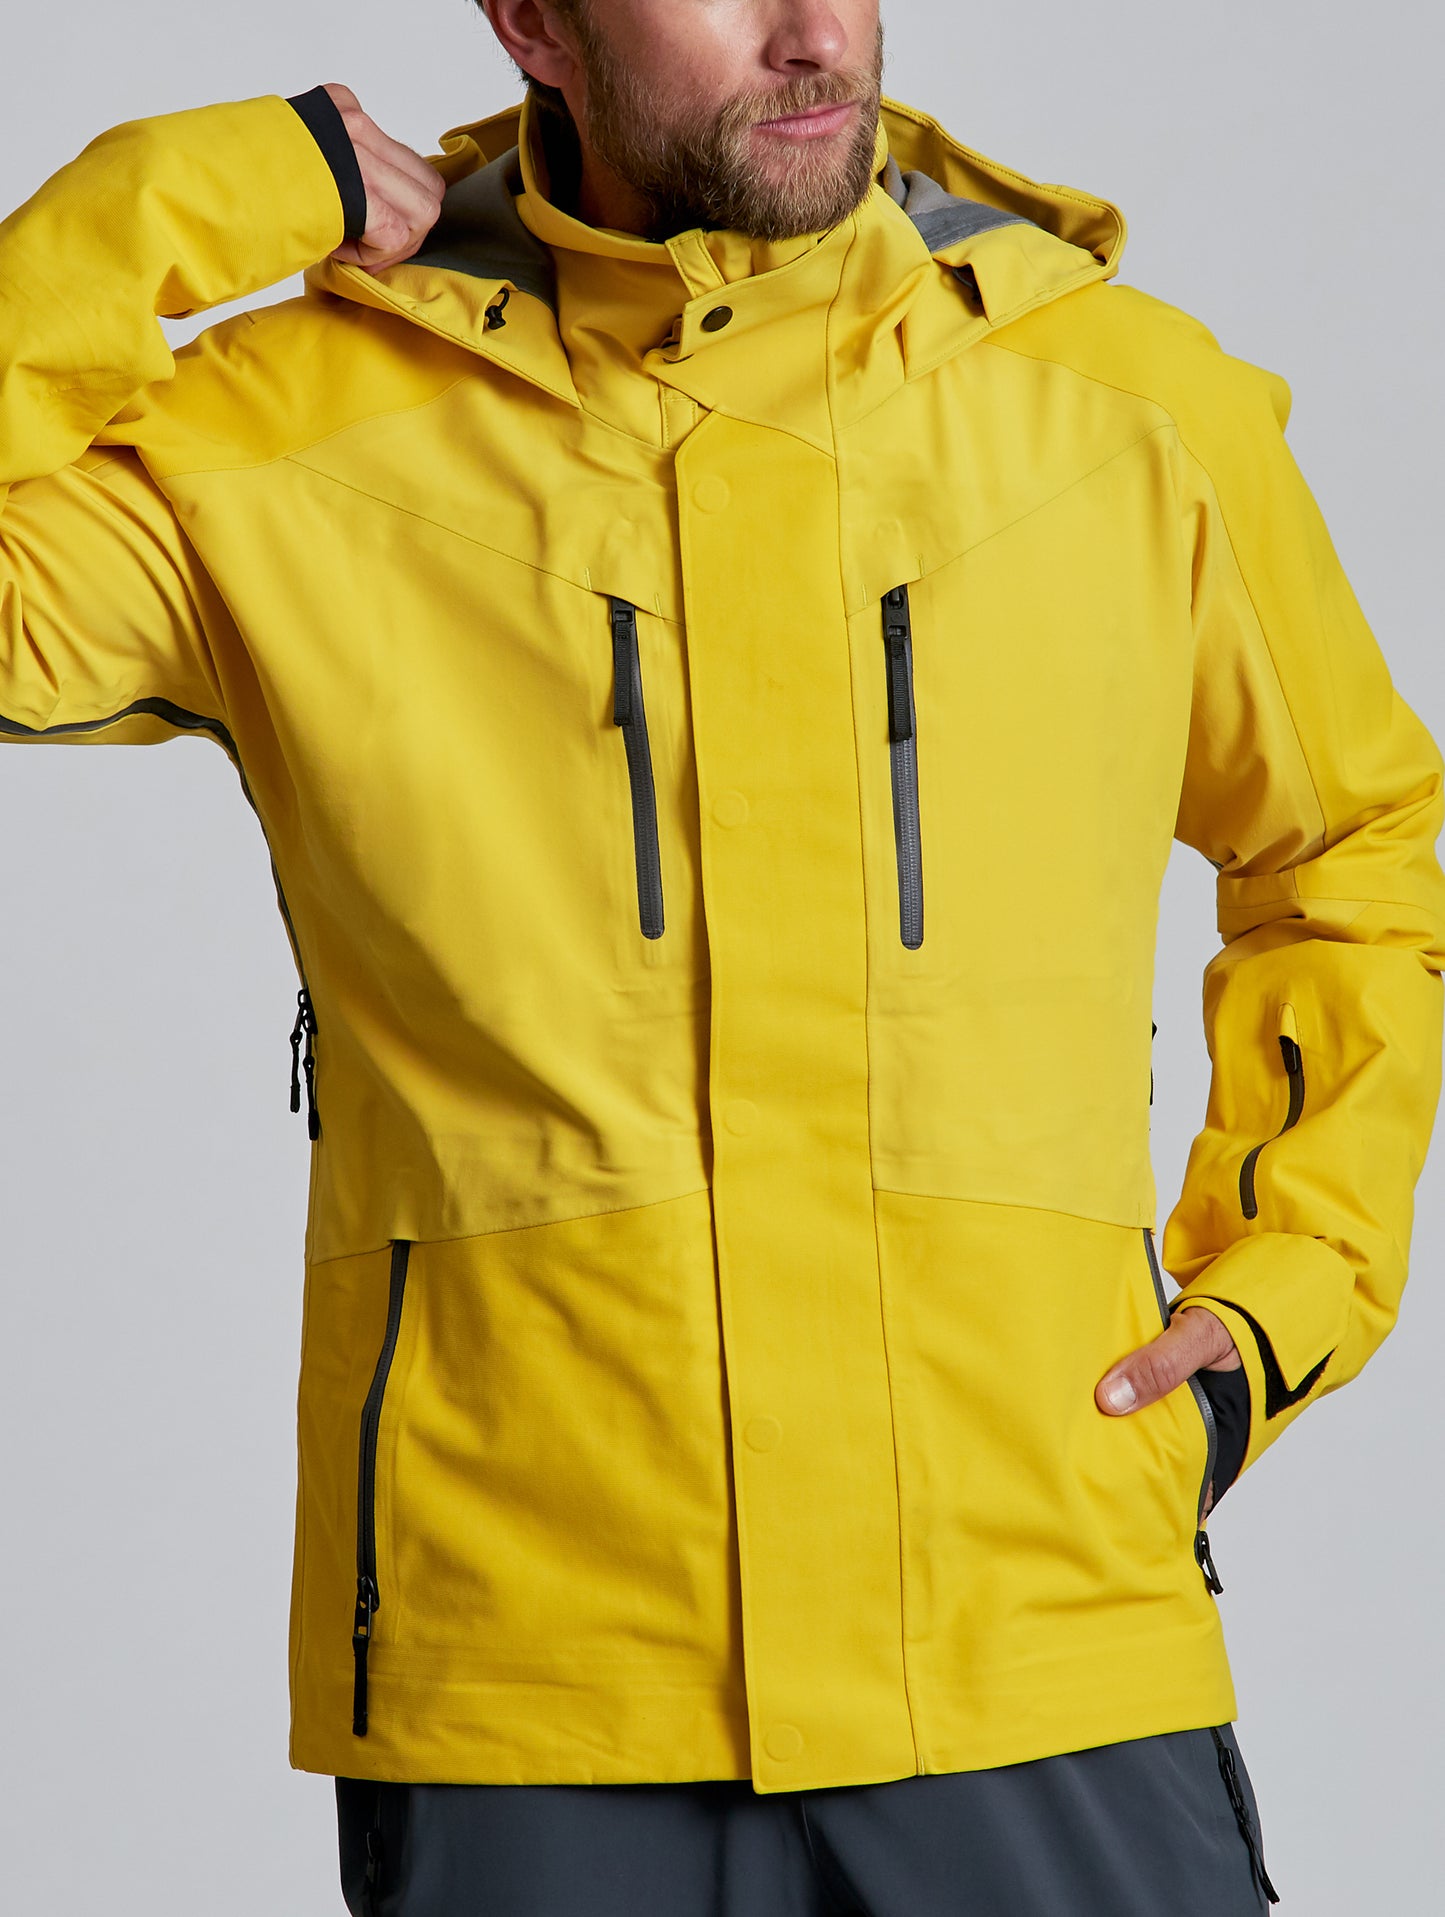 man wearing yellow snow jacket